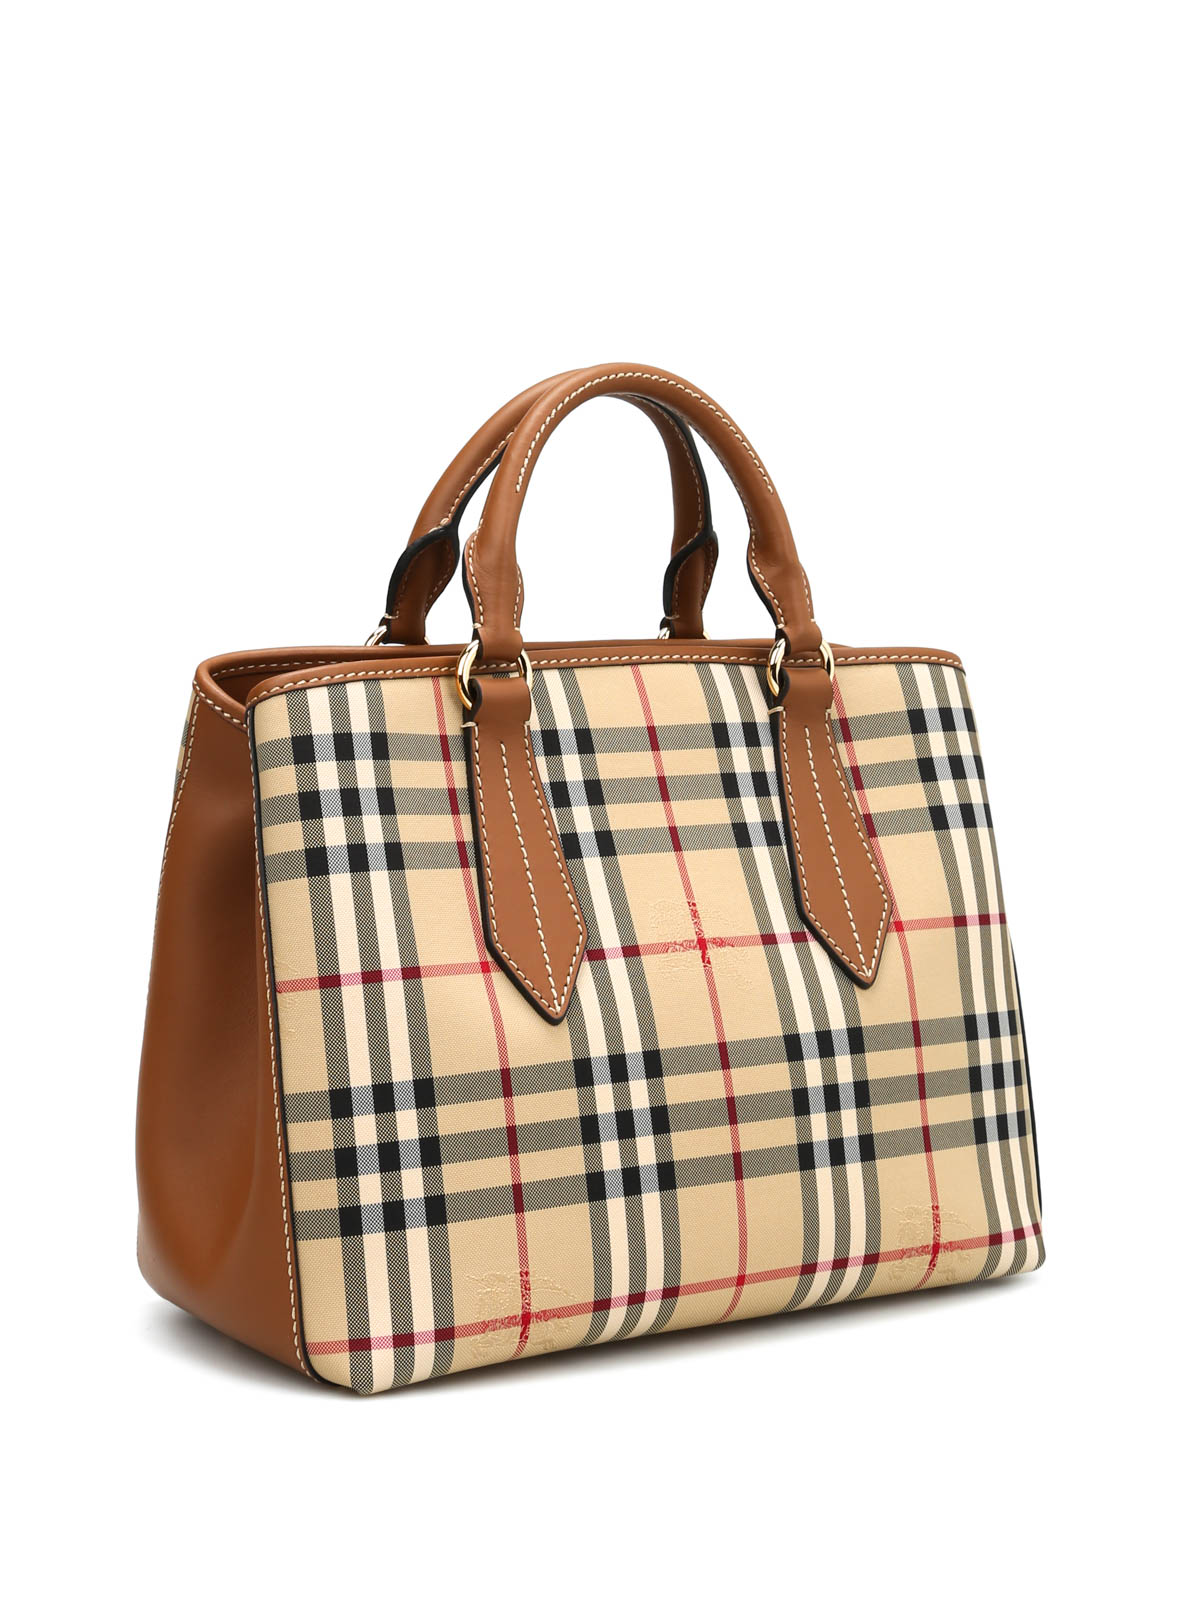 Totes bags Burberry - Ballingdon medium tote - 40338441 | iKRIX.com